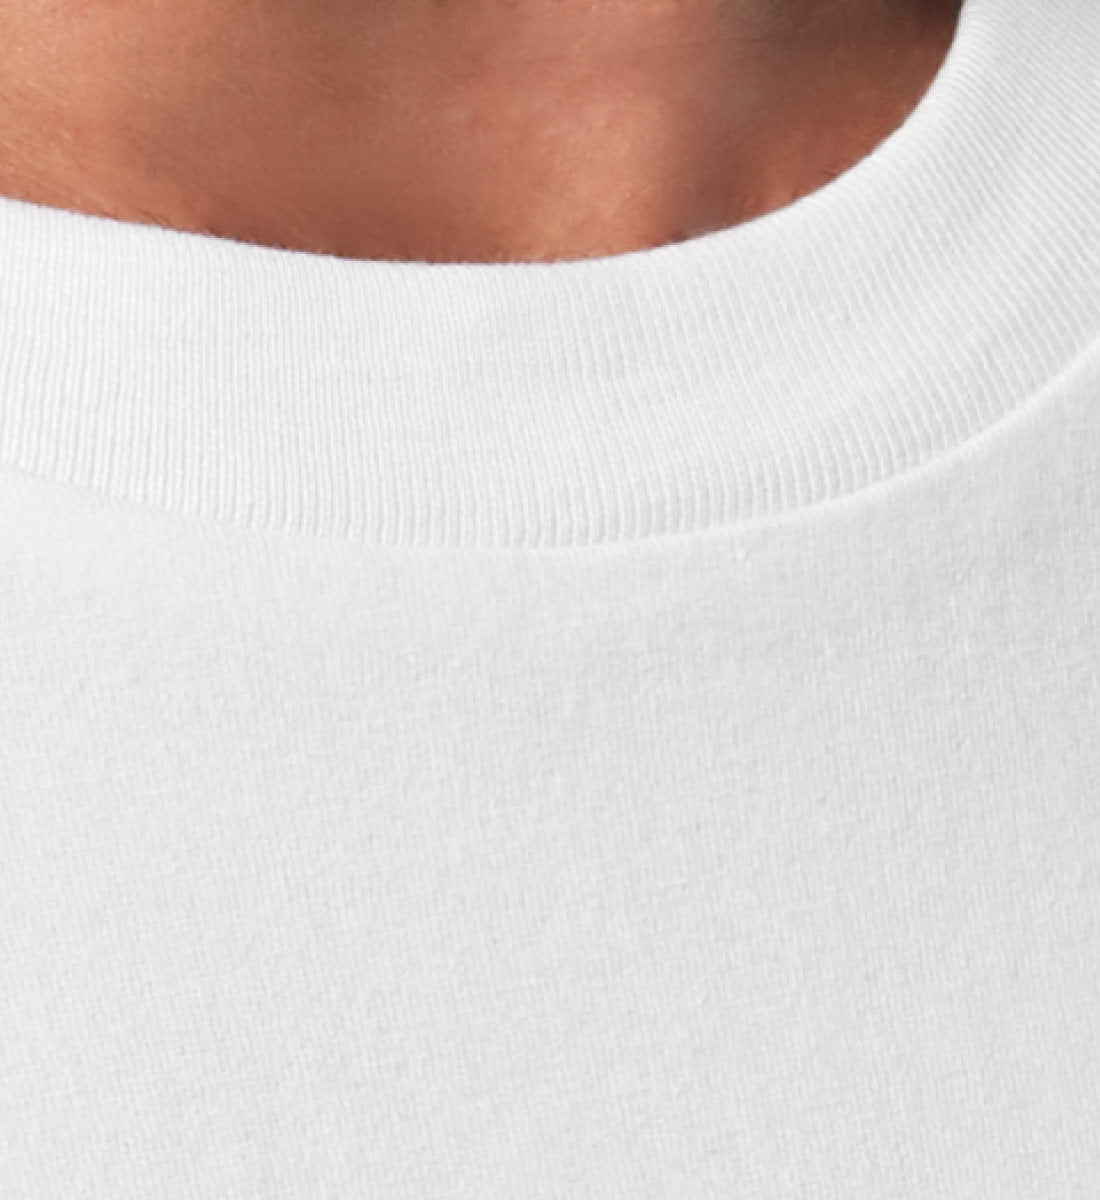 Weißes T-Shirt Unisex Relaxed Fit für Frauen und Männer bedruckt mit dem Design der Roger Rockawoo Clothing Kollektion Guitar Funky Shit